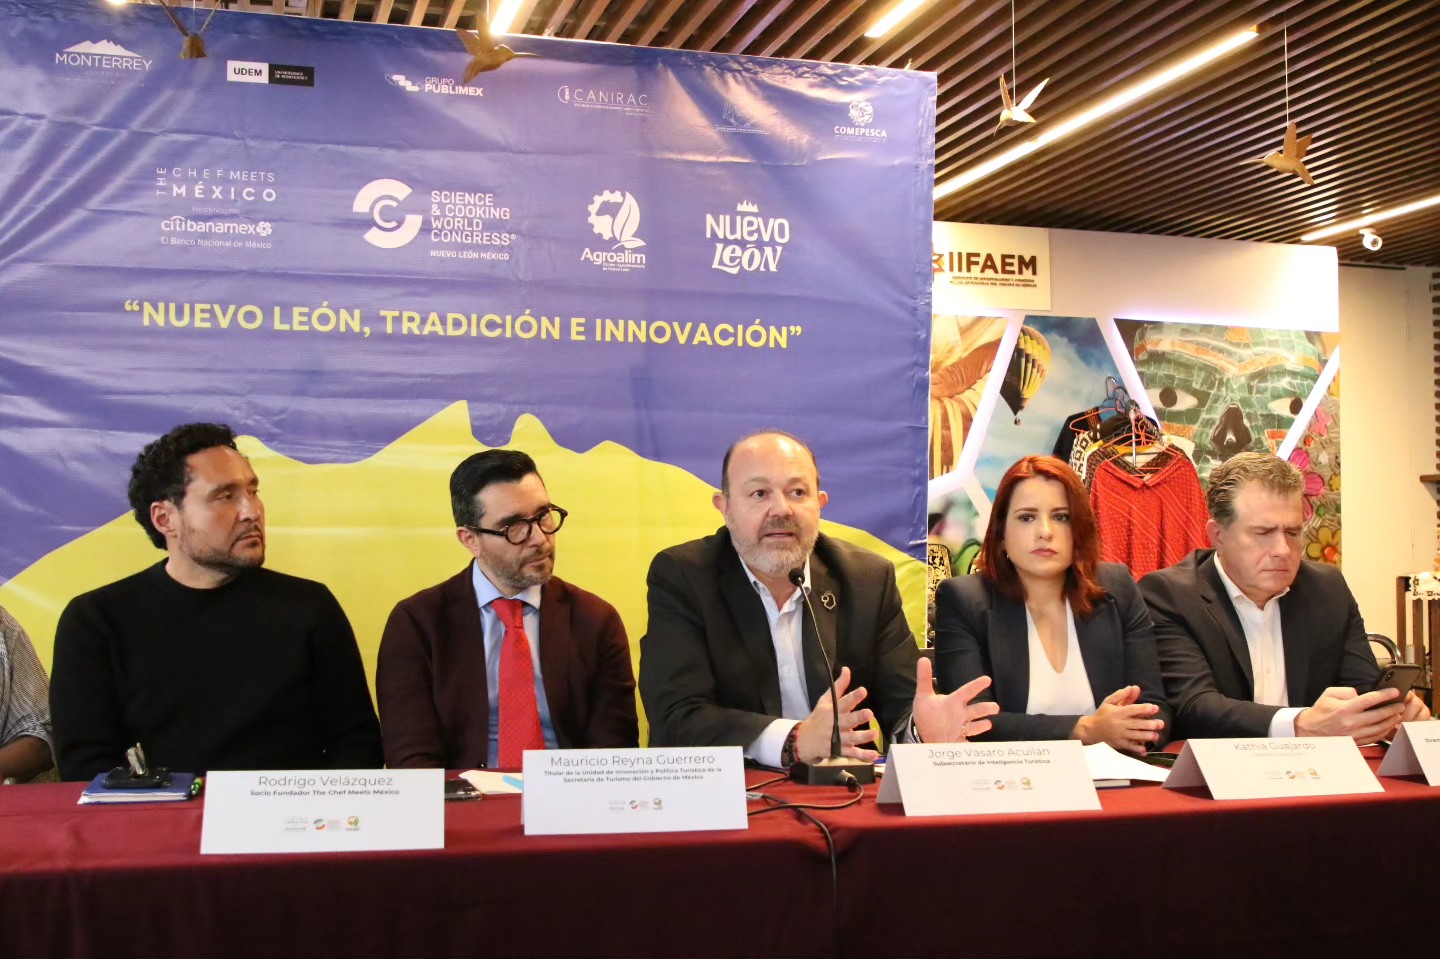 Nuevo León: Epicentro del turismo gastronómico sostenible